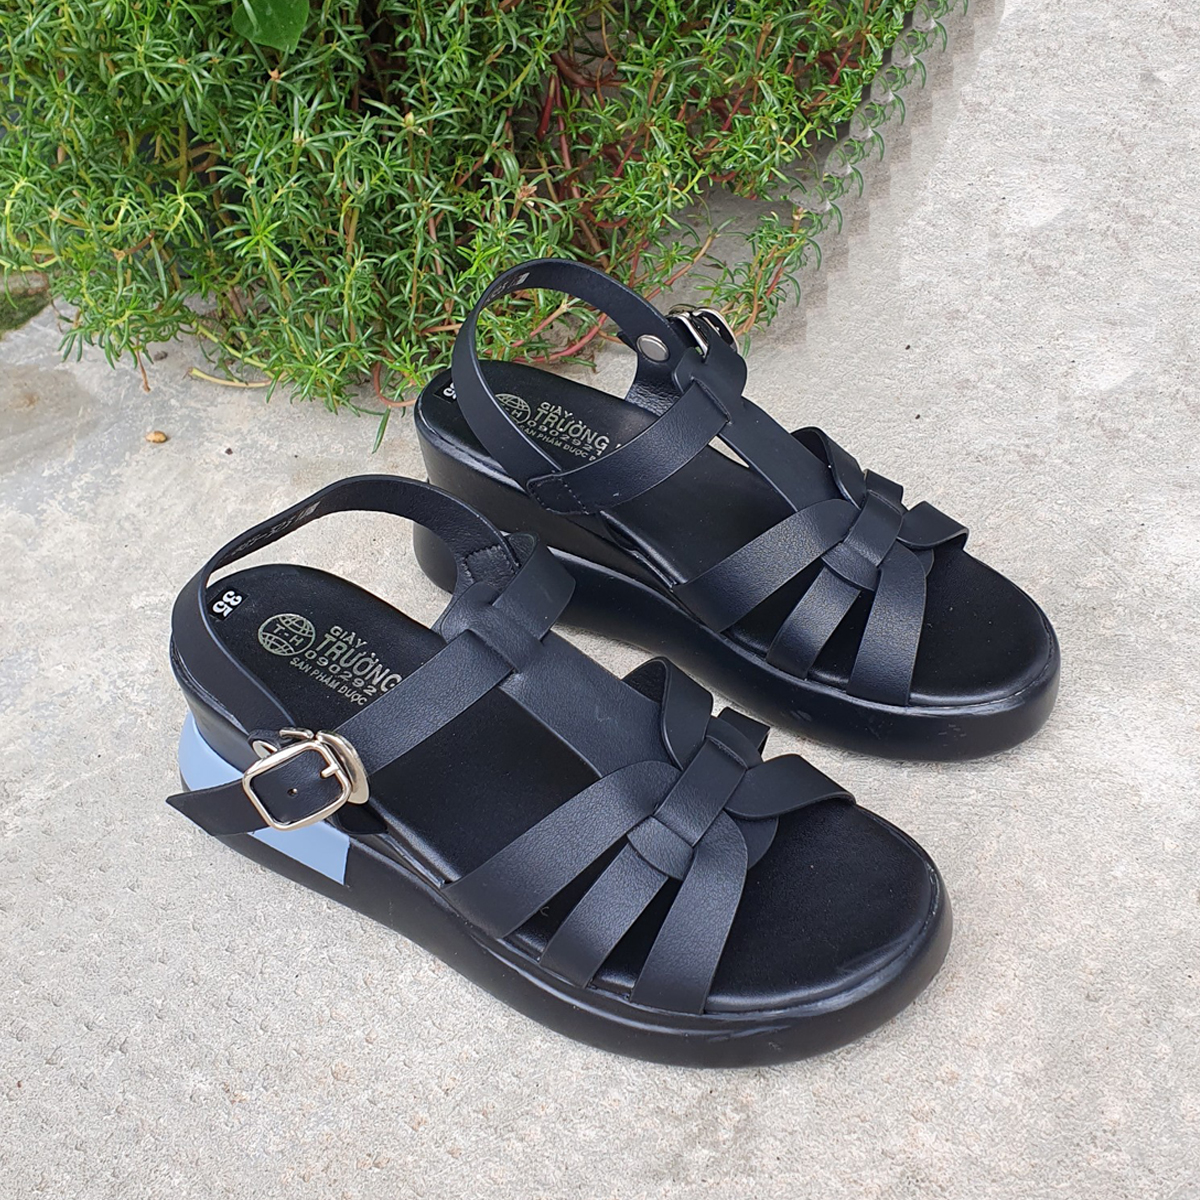 Giày sandal nữ đế xuồng 7cm Trường Hải 2 màu đen, xám thời trang nữ X160